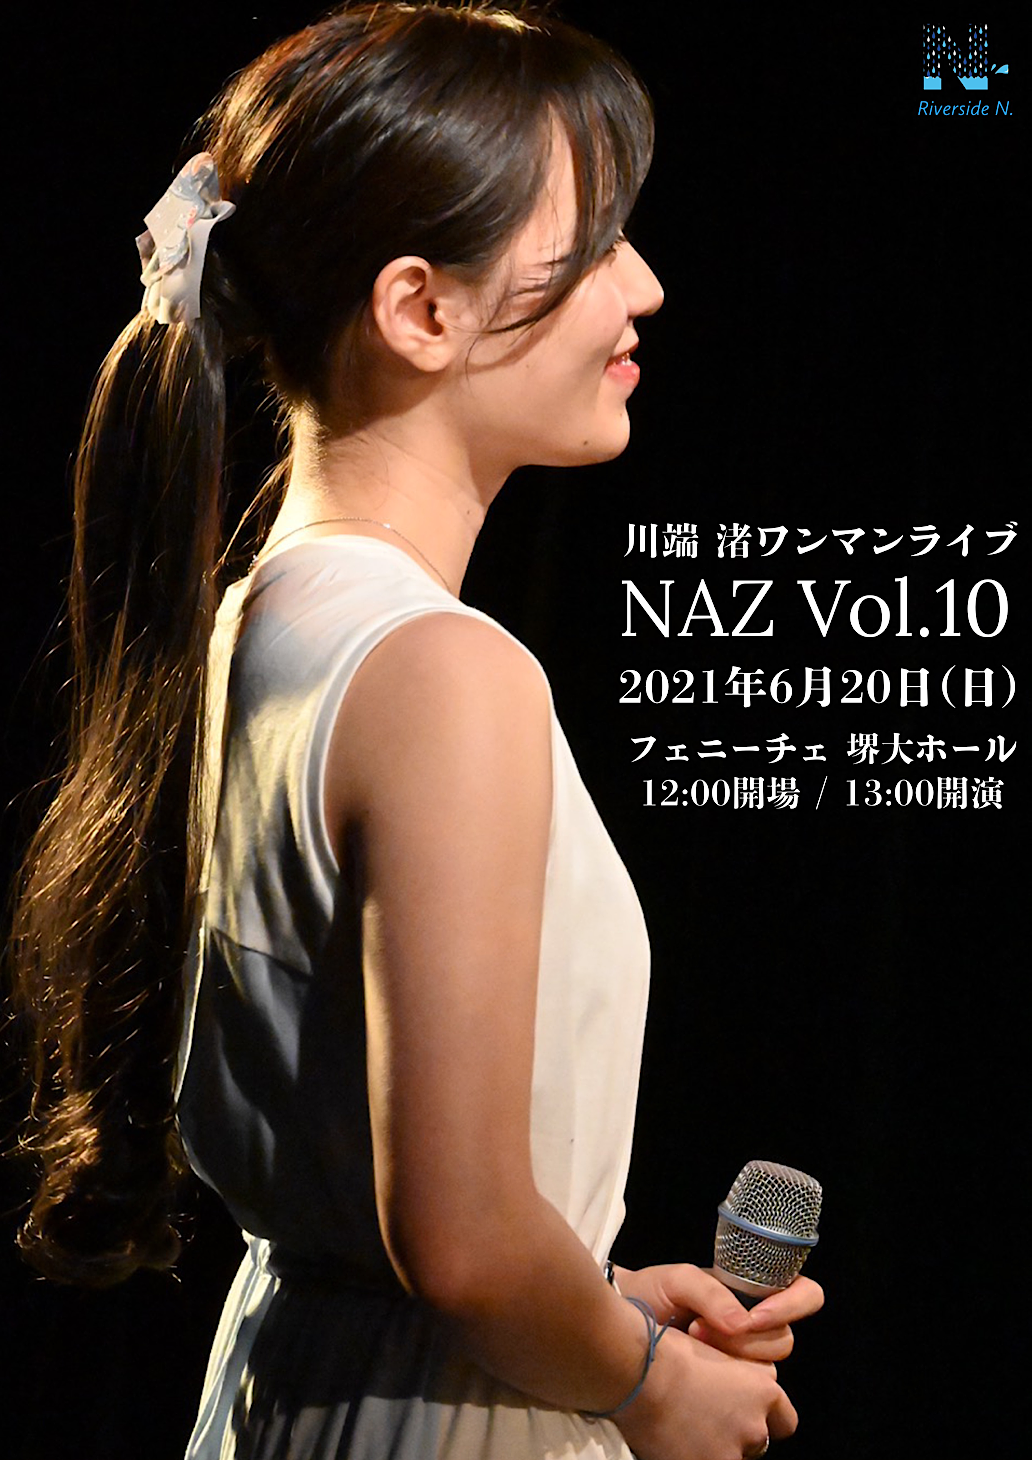 【中止】川端渚ワンマンライブ「NAZ Vol.10」